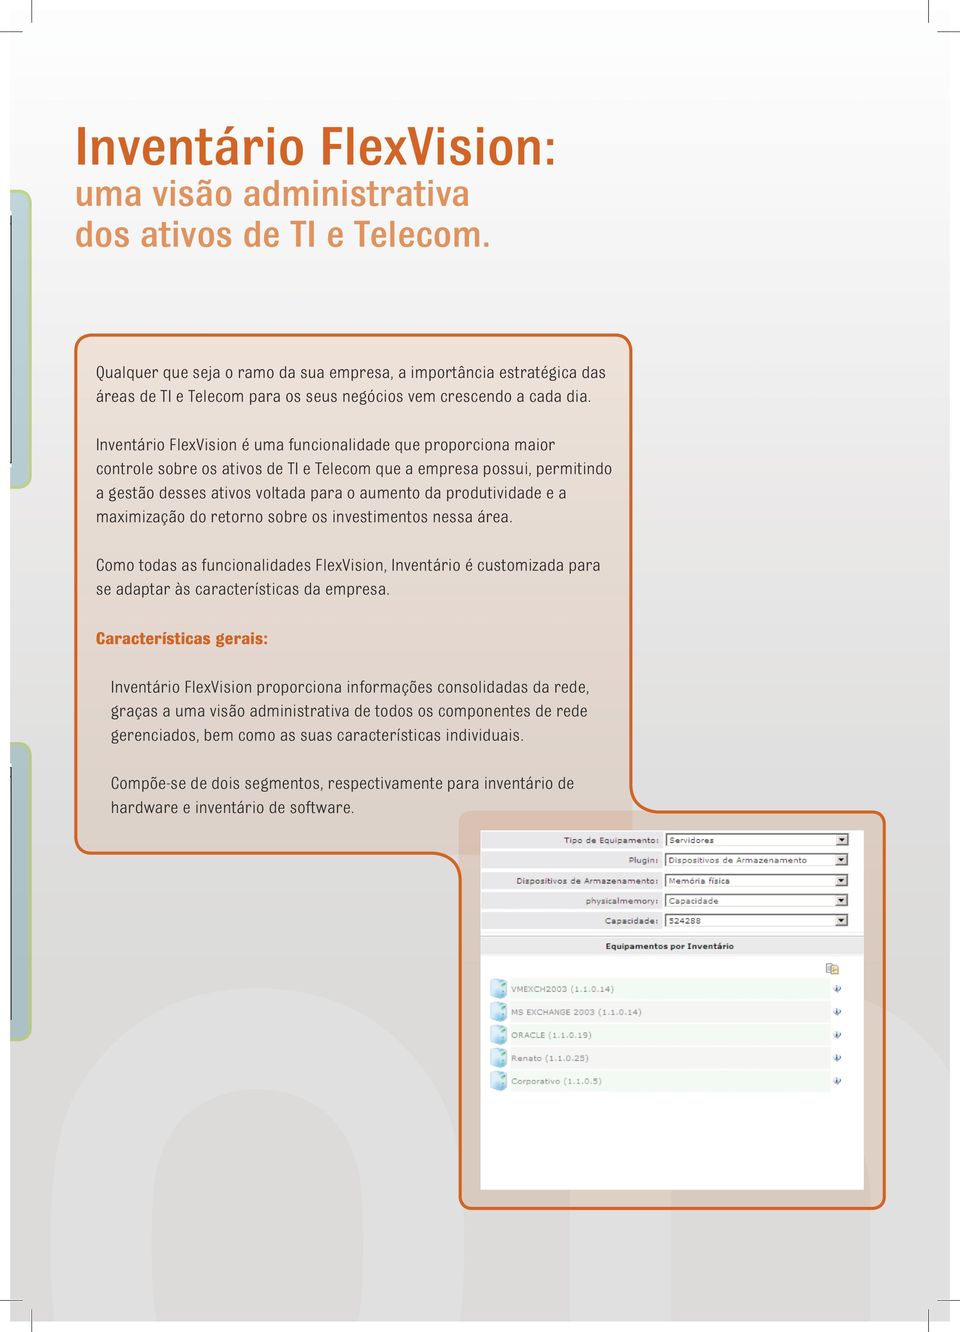 Inventário FlexVision é uma funcionalidade que proporciona maior controle sobre os ativos de TI e Telecom que a empresa possui, permitindo a gestão desses ativos voltada para o aumento da